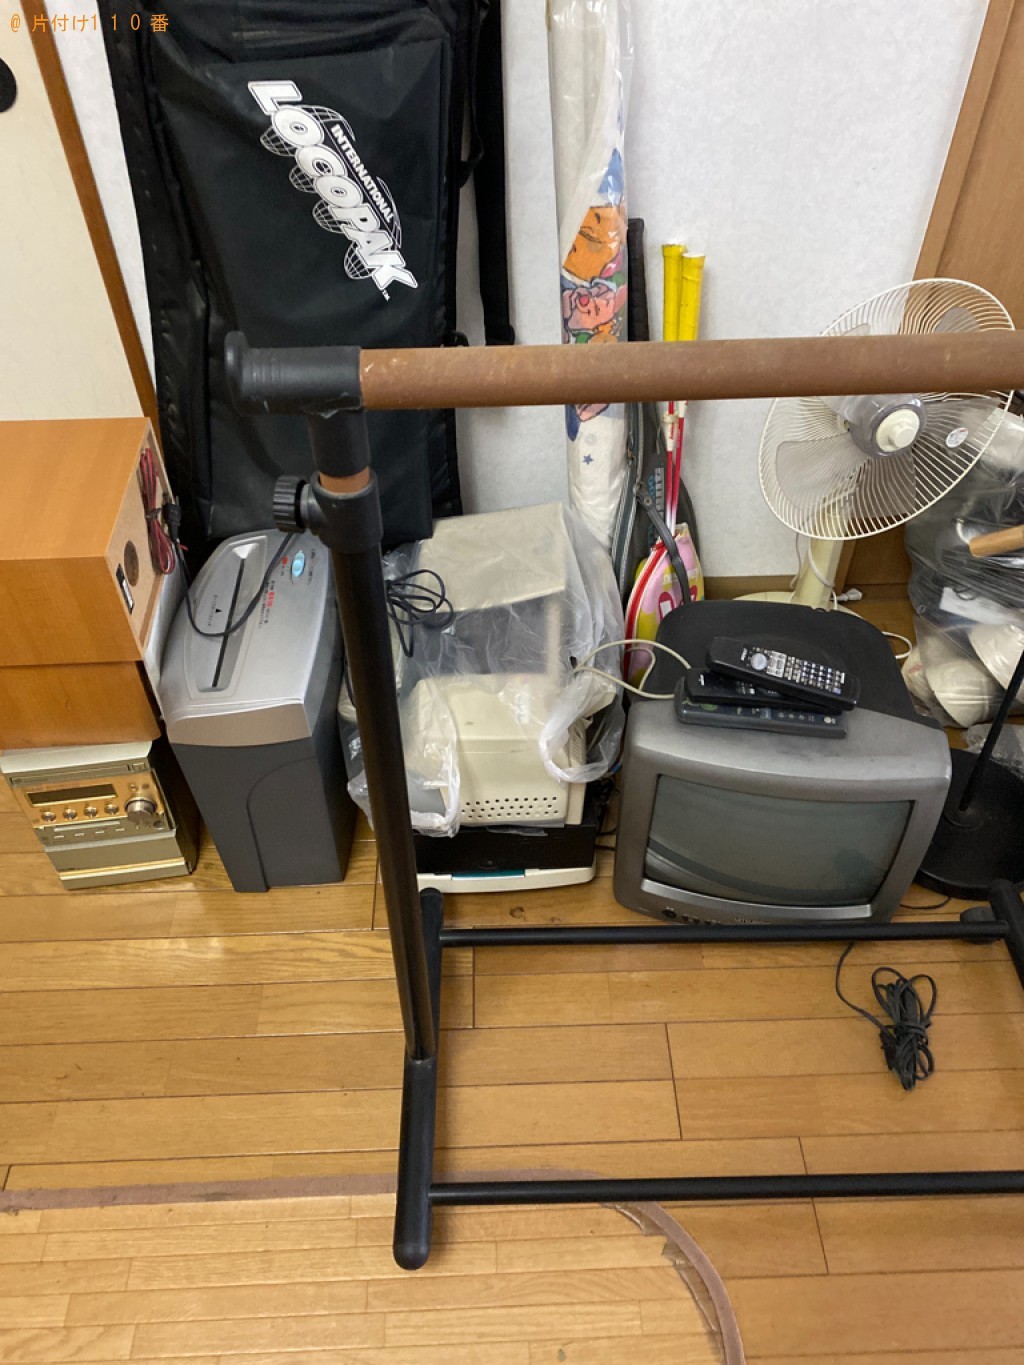 【岡山市北区】マッサージチェア、ハンガーラック、テレビ等の回収